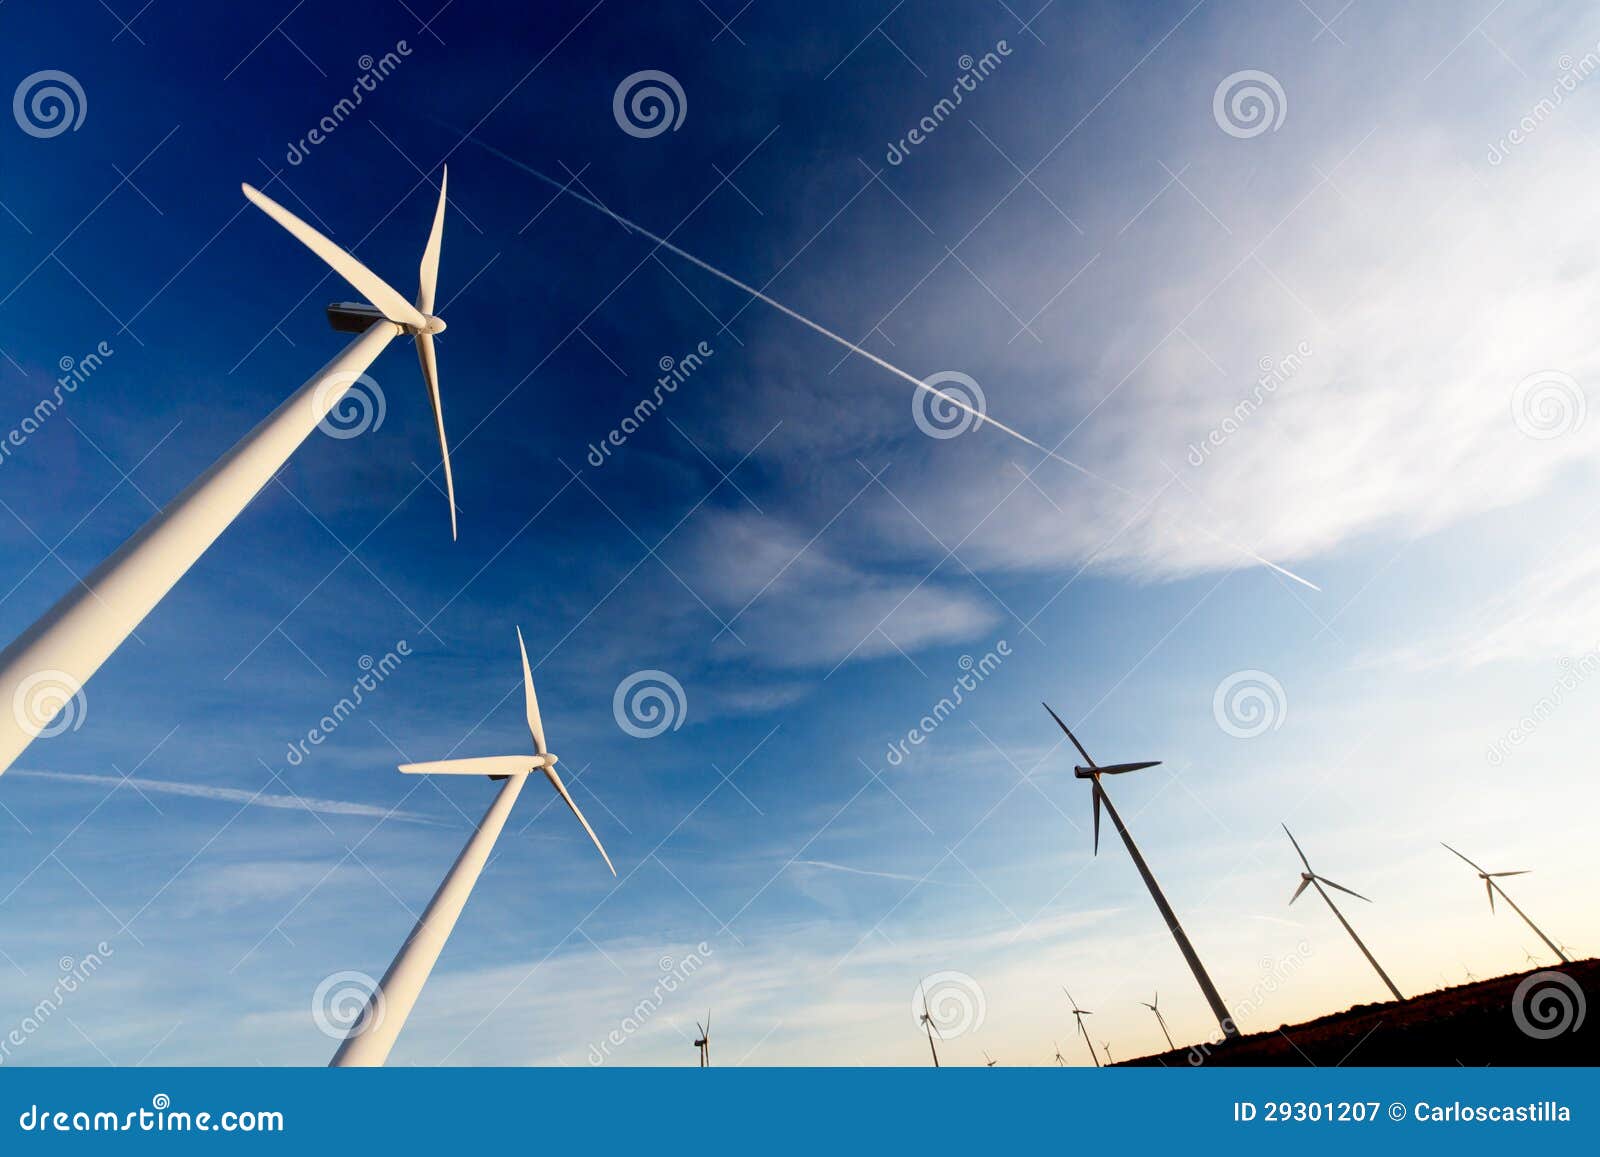 wind farm, industrial eolic installation